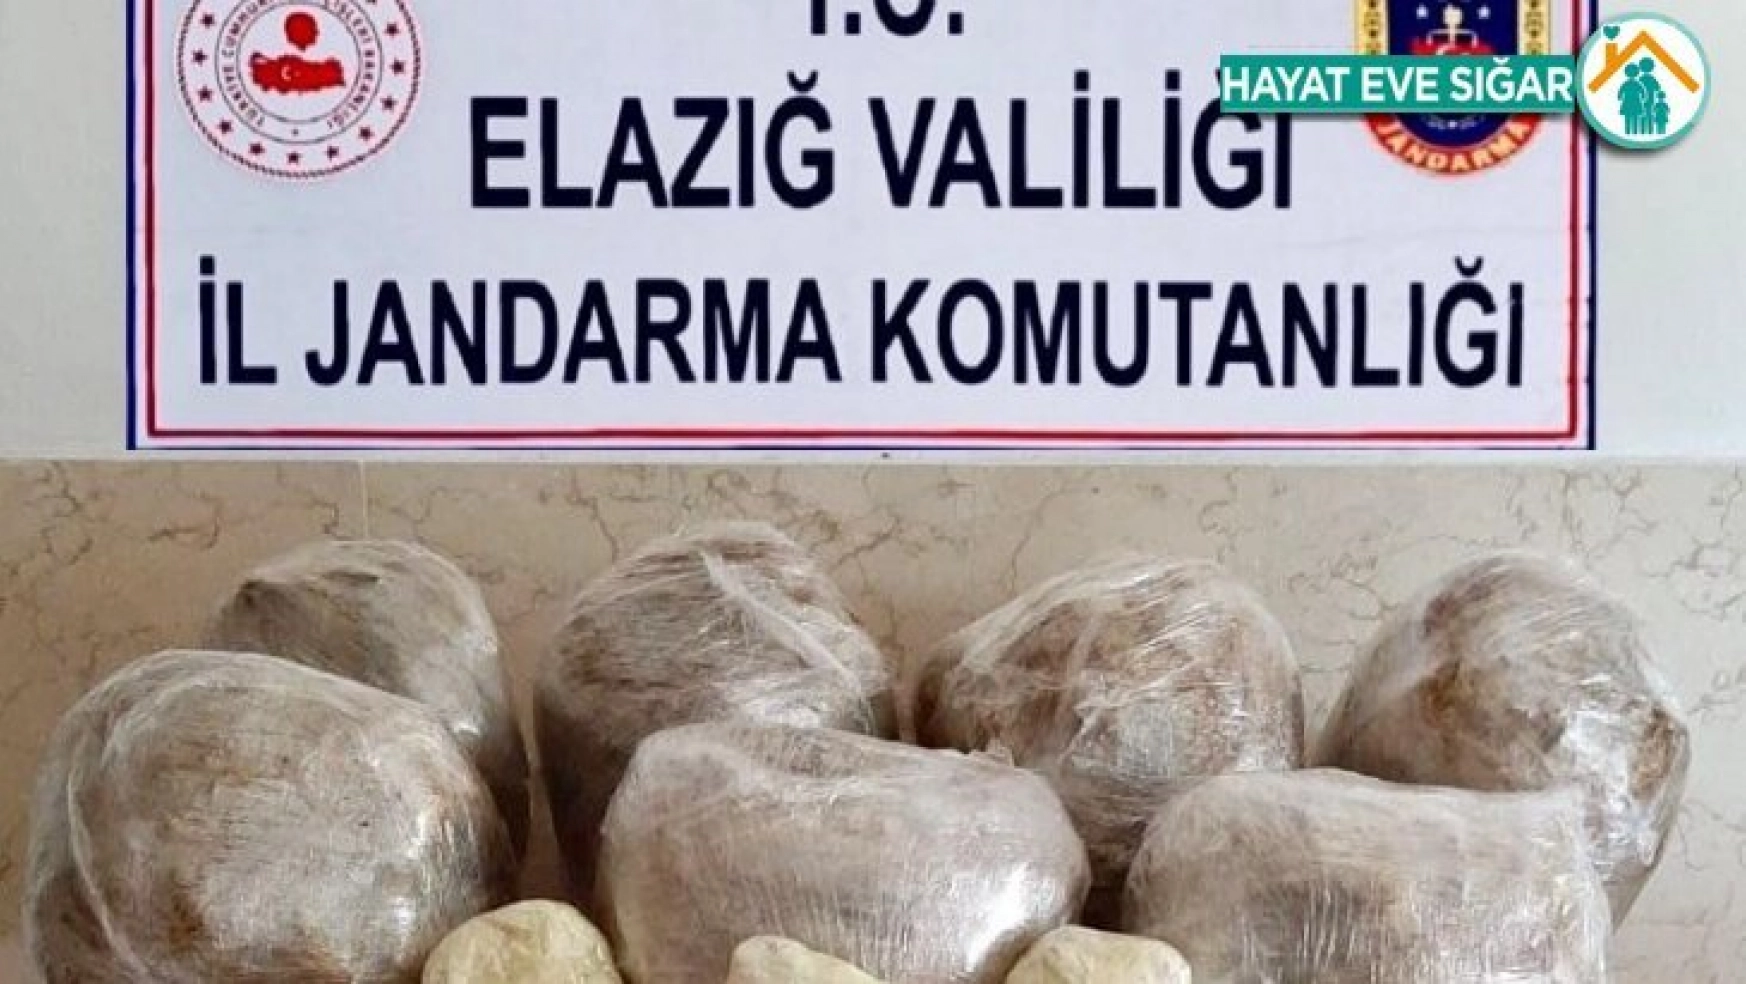 Elazığ'da uyuşturucu operasyonu: 62 kilo toz esrar ele geçirildi